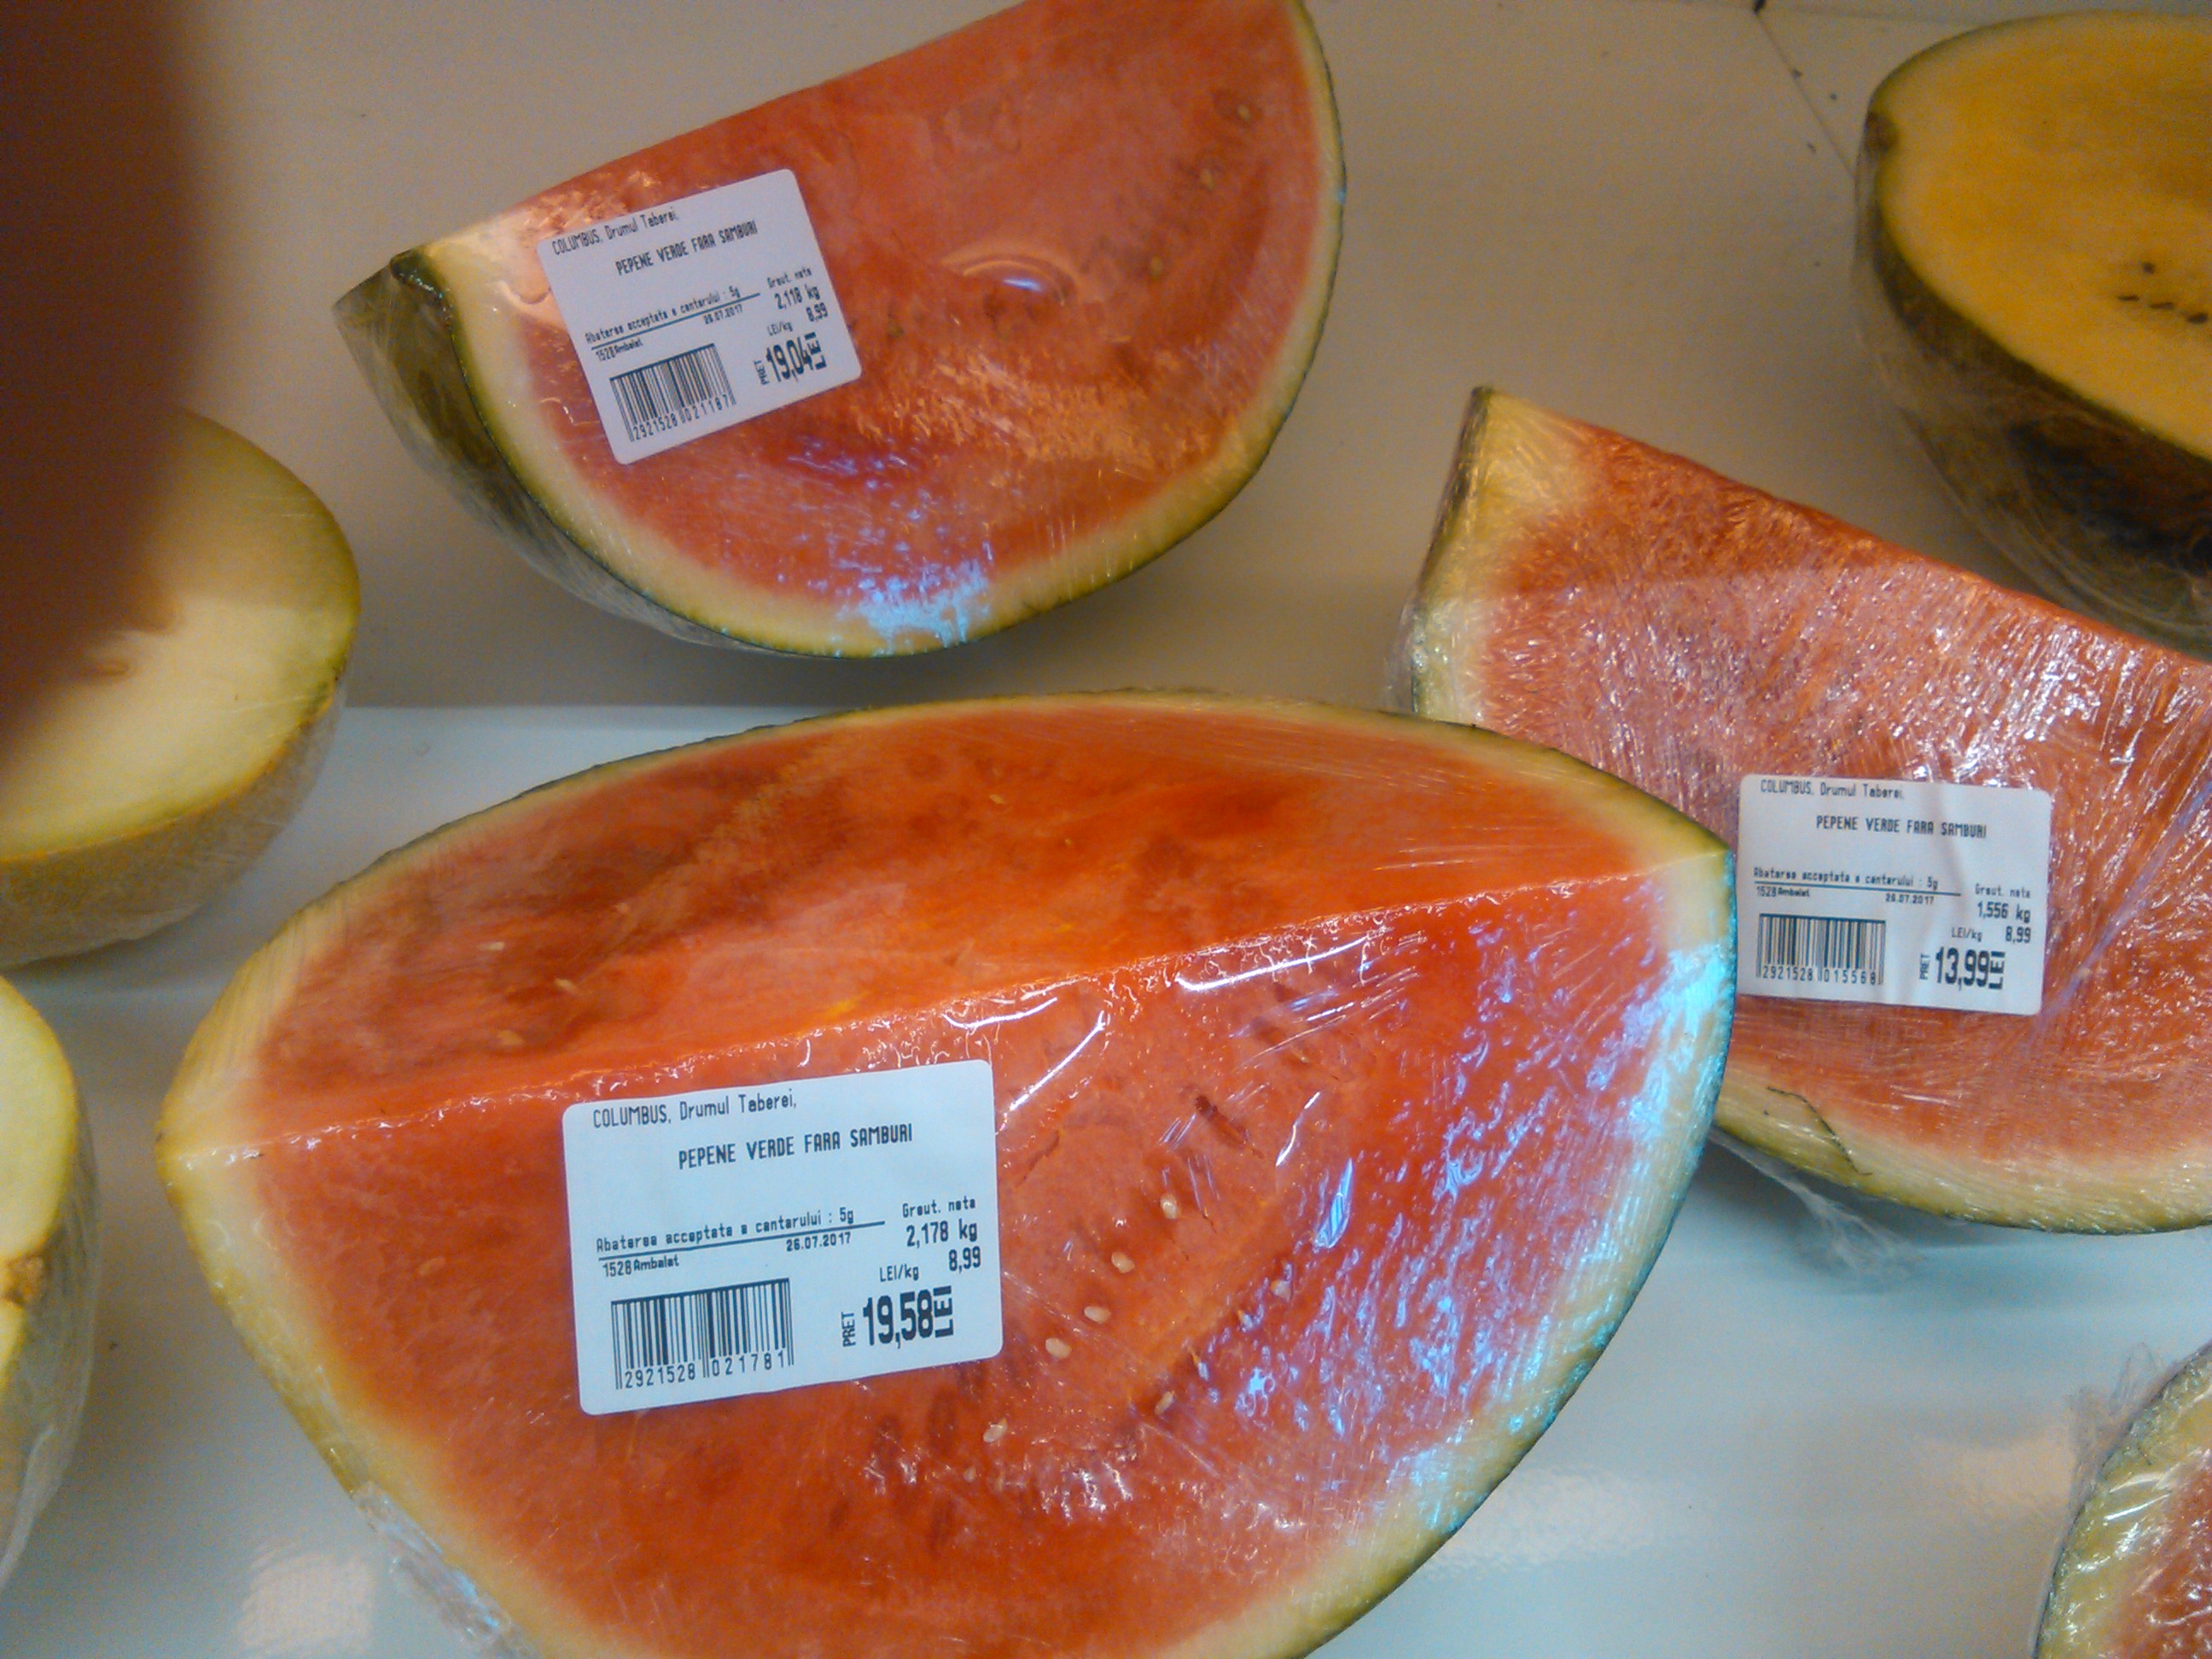 Noua moda in supermarket: Pepenele fara samburi. Se vinde la felie si costa 8,99 lei/kg